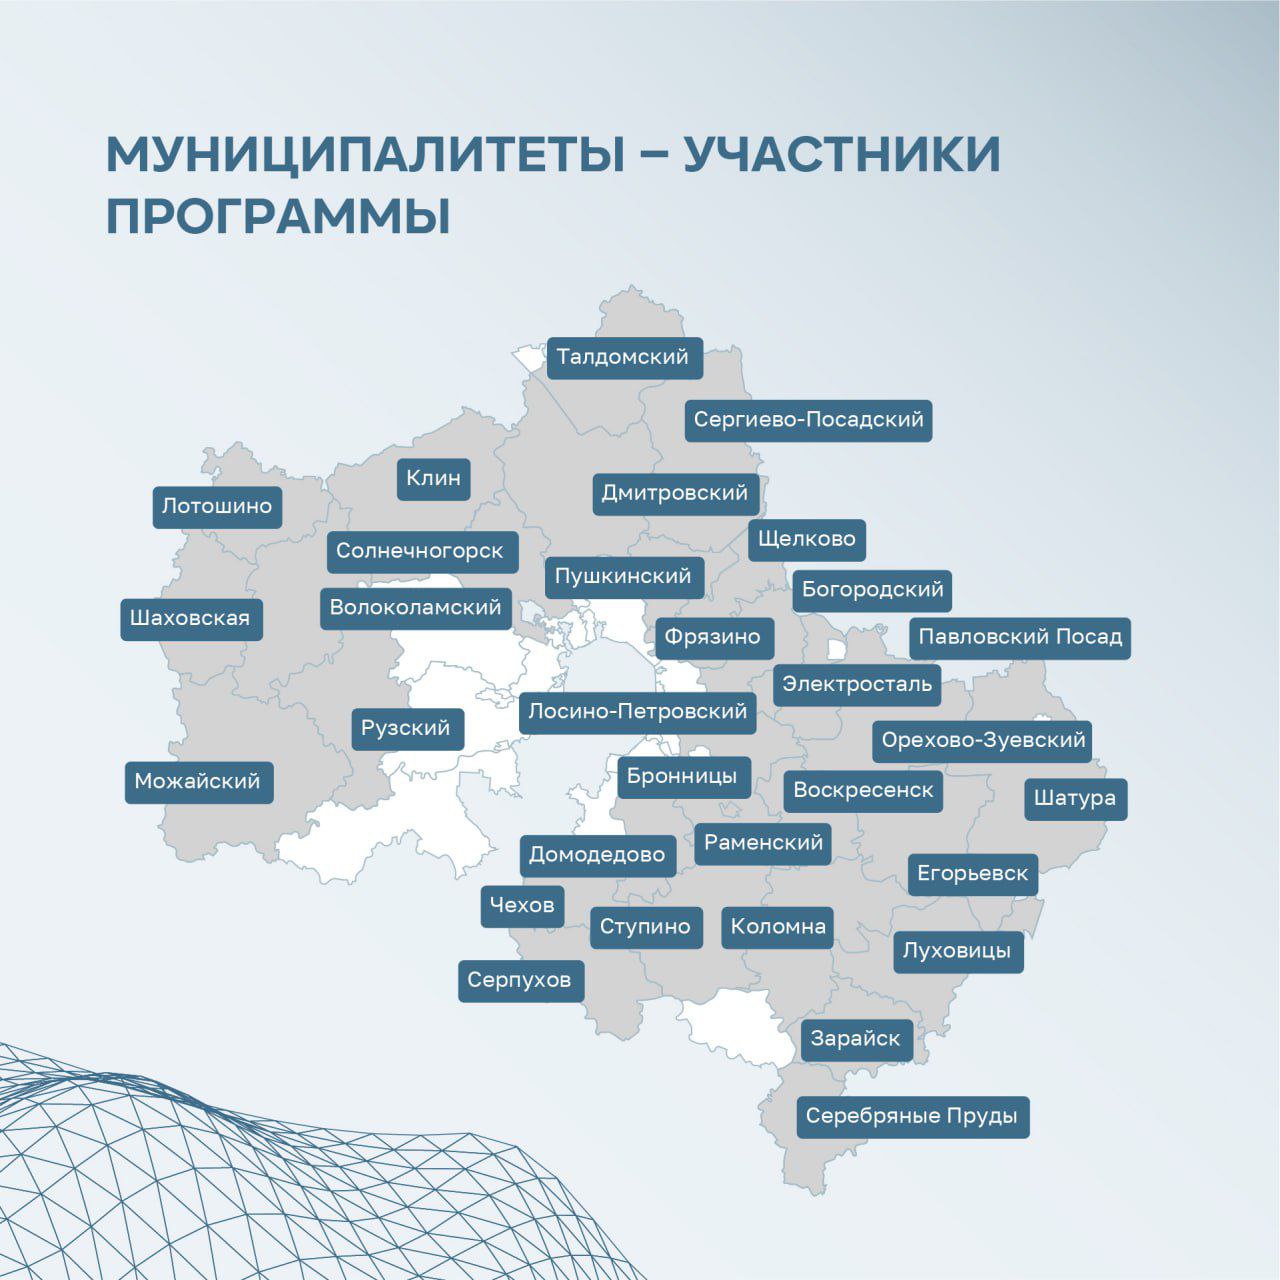 Земельные участки подмосковным врачам предоставляются согласно закону Московской области № 144/2021-ОЗ, принятому Мособлдумой в июне